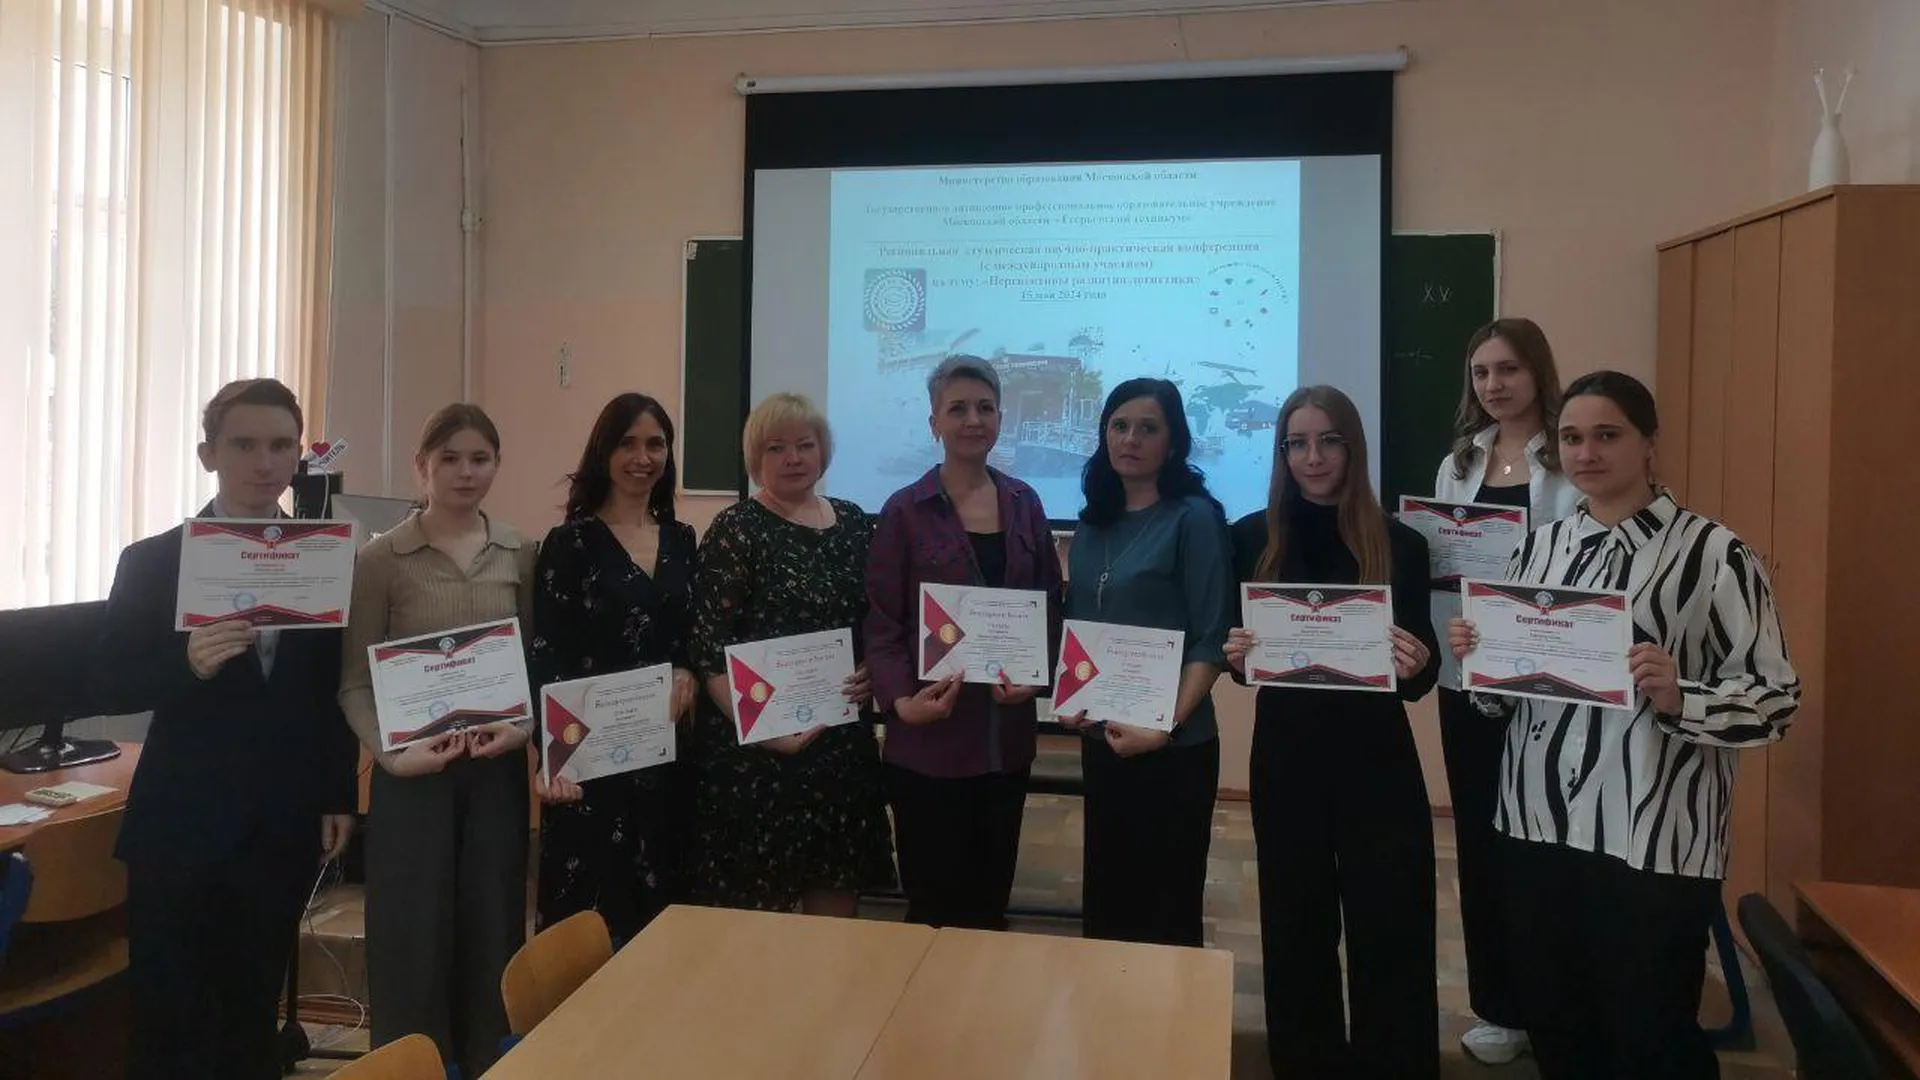 Студенческая научно-практическая конференция прошла в подмосковном Егорьевске